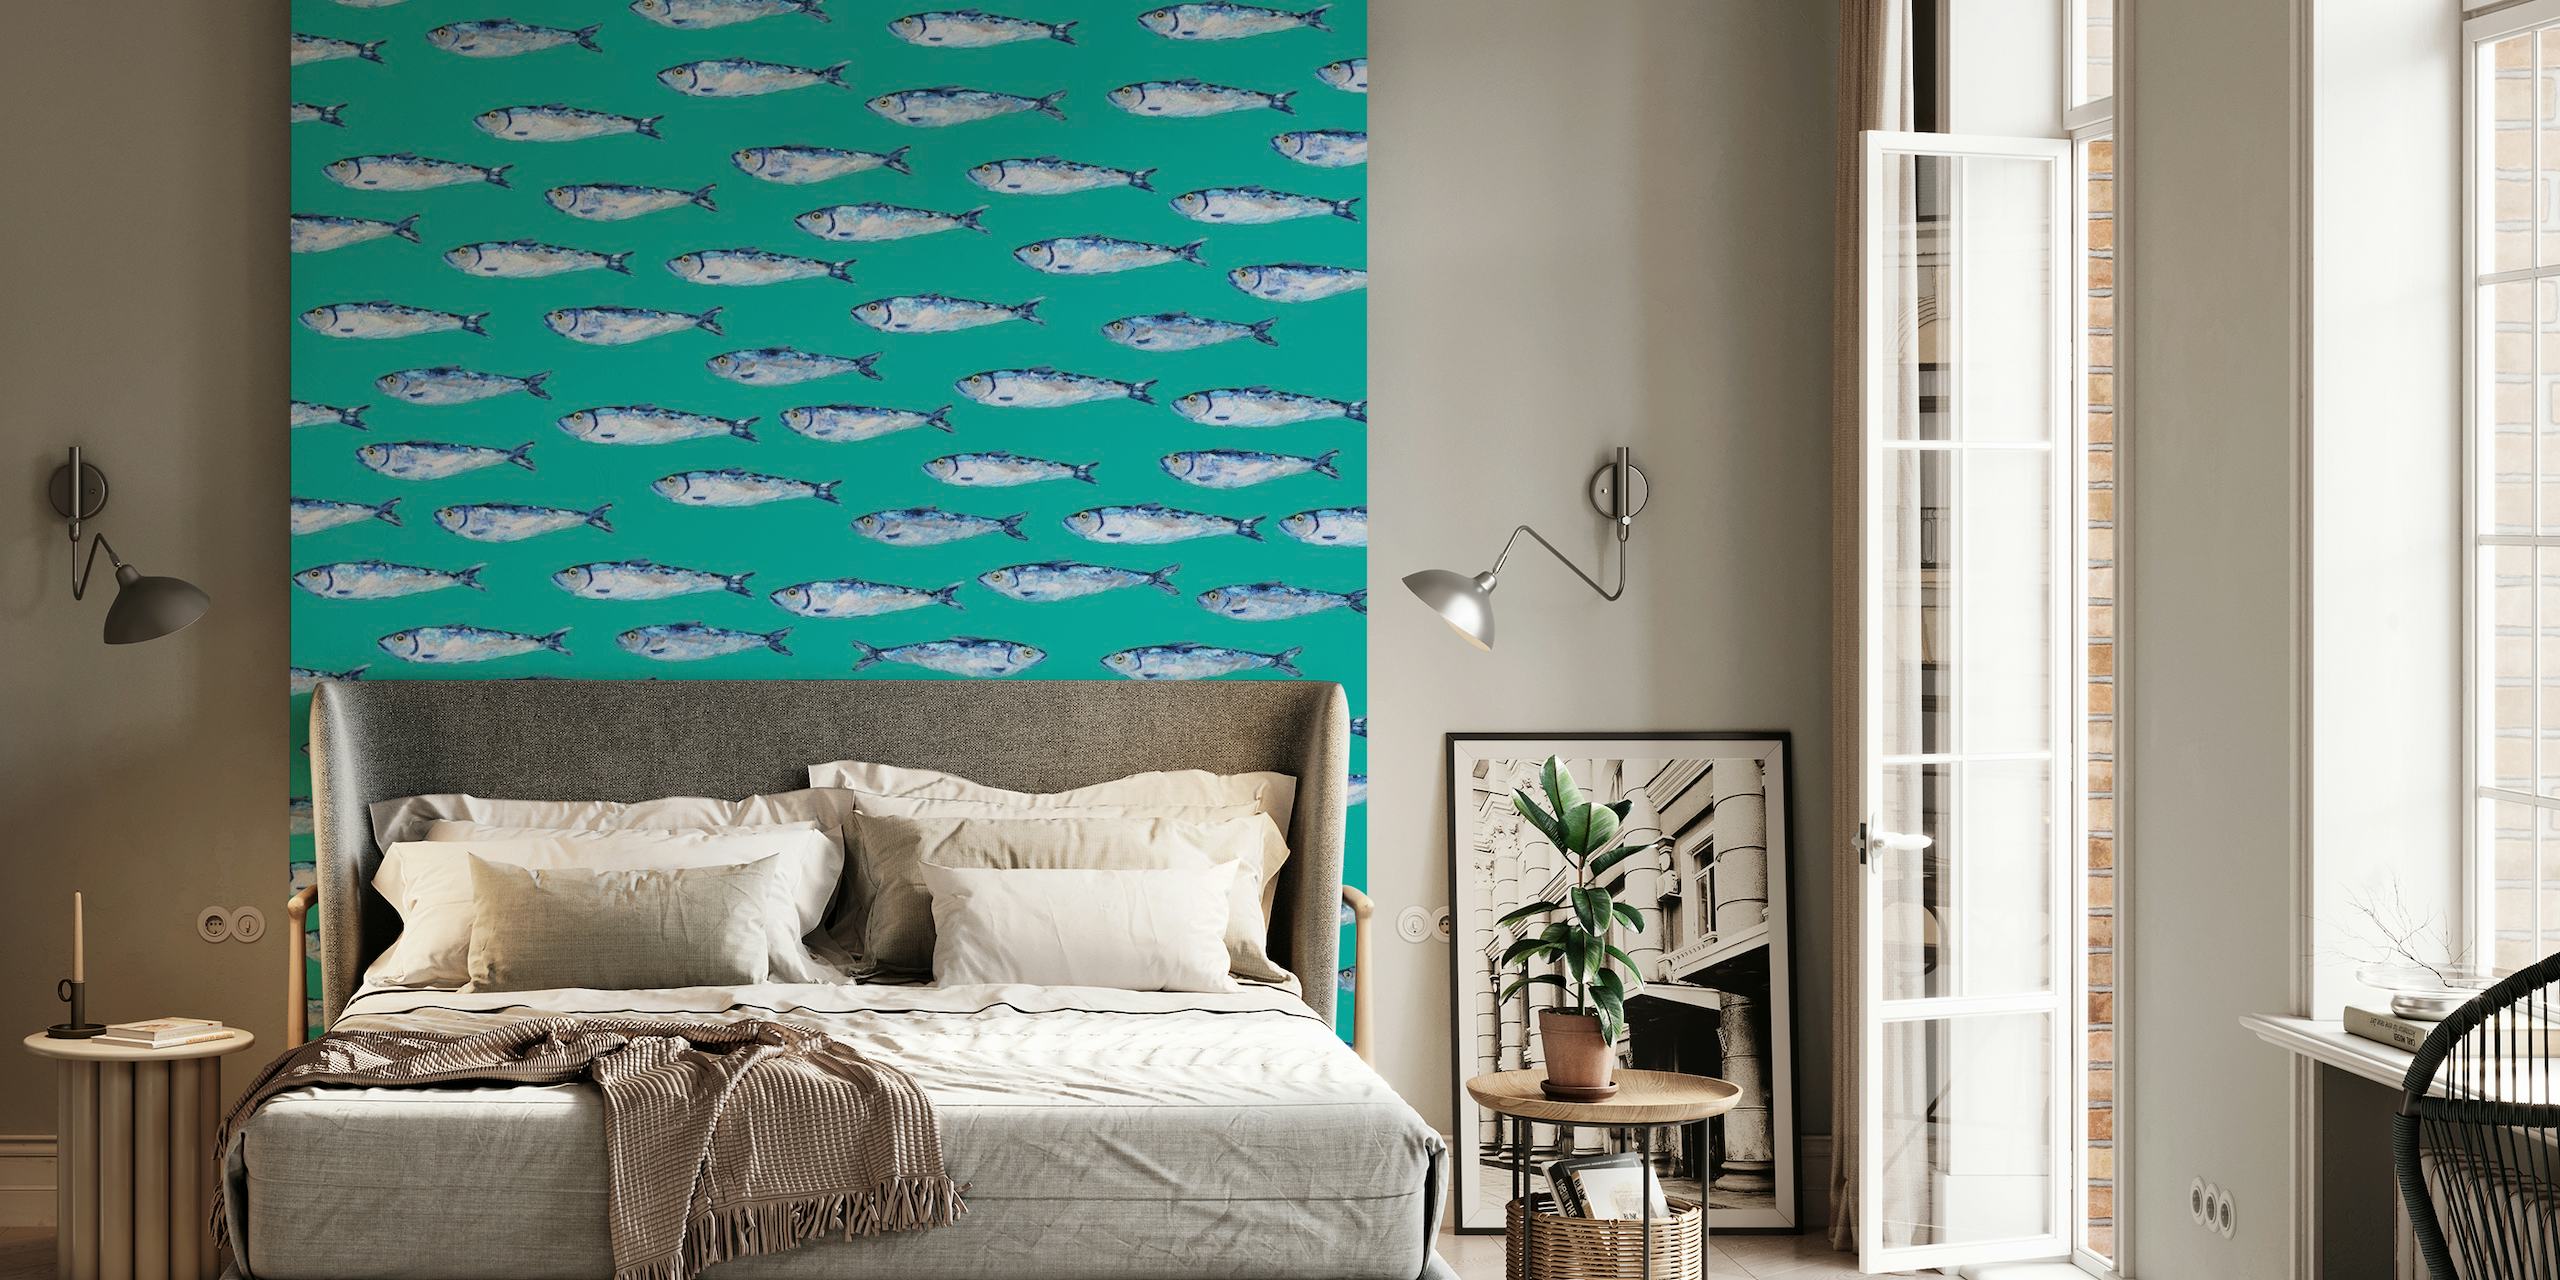 Zilveren sardinespatroon op een blauwgroen muurschildering als achtergrond